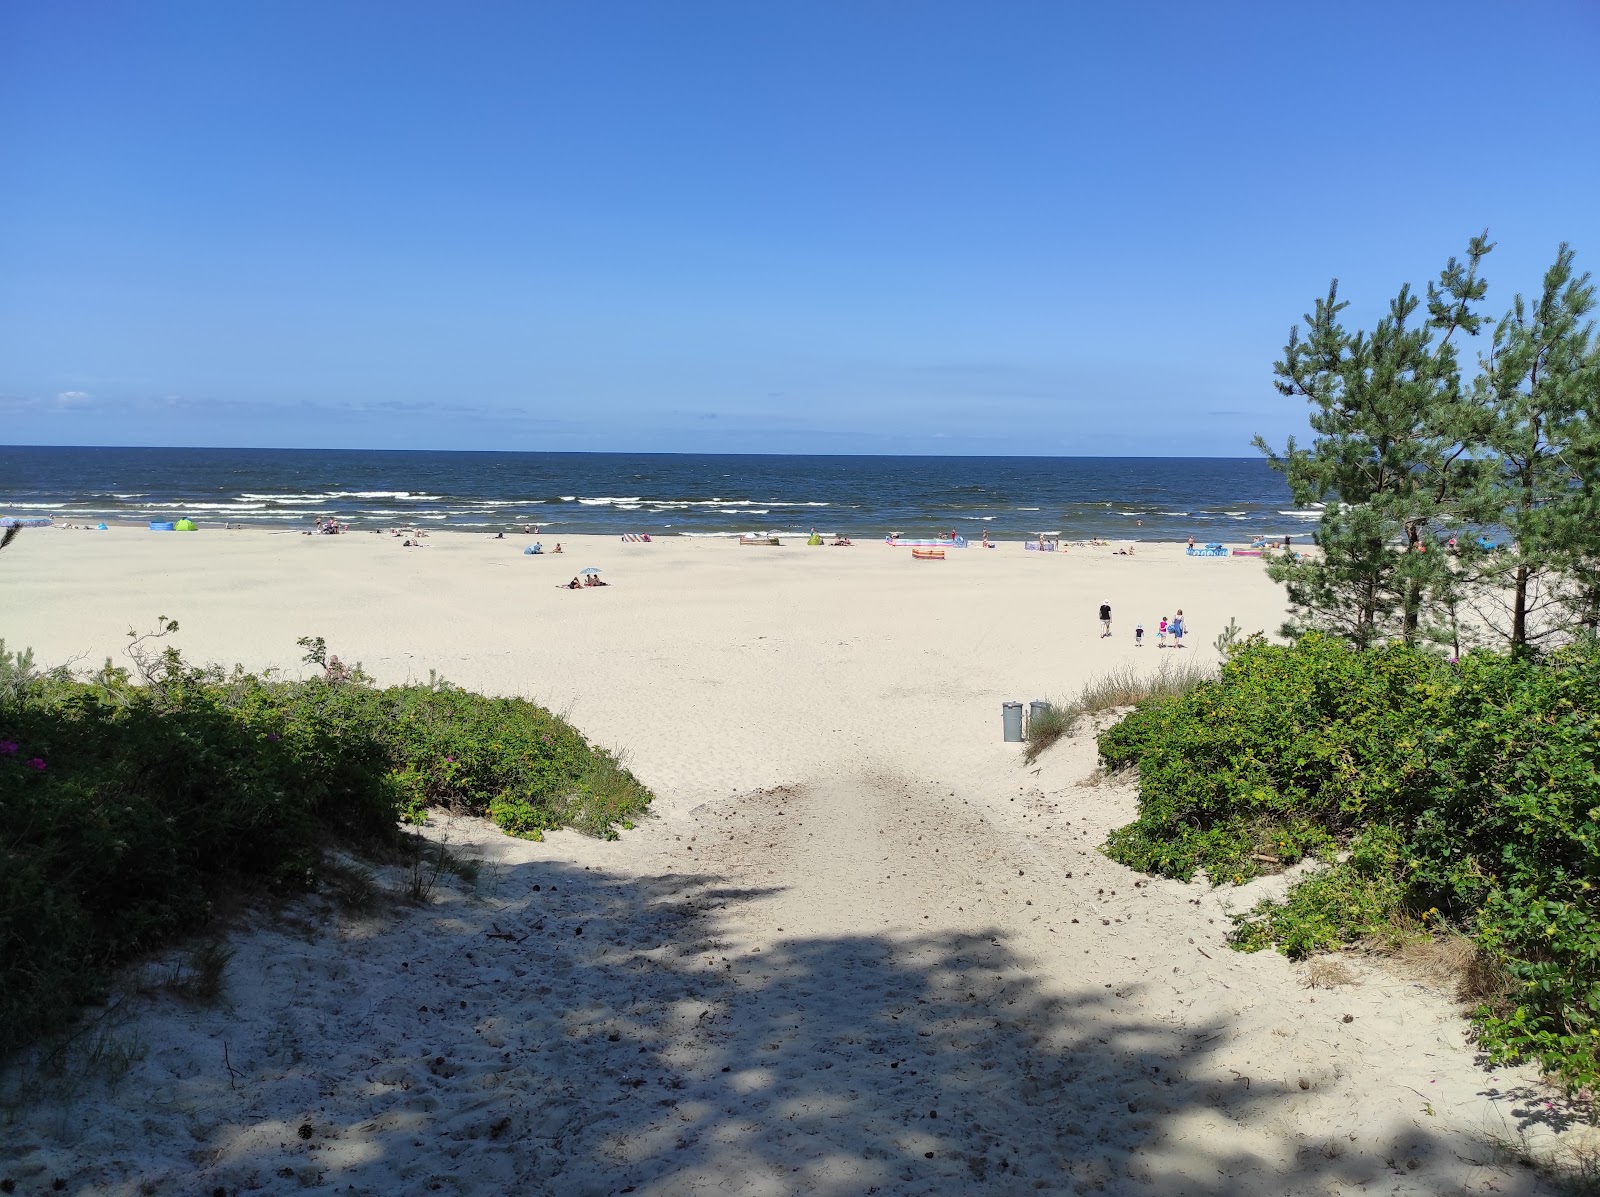 Zdjęcie Przebrno beach - popularne miejsce wśród znawców relaksu